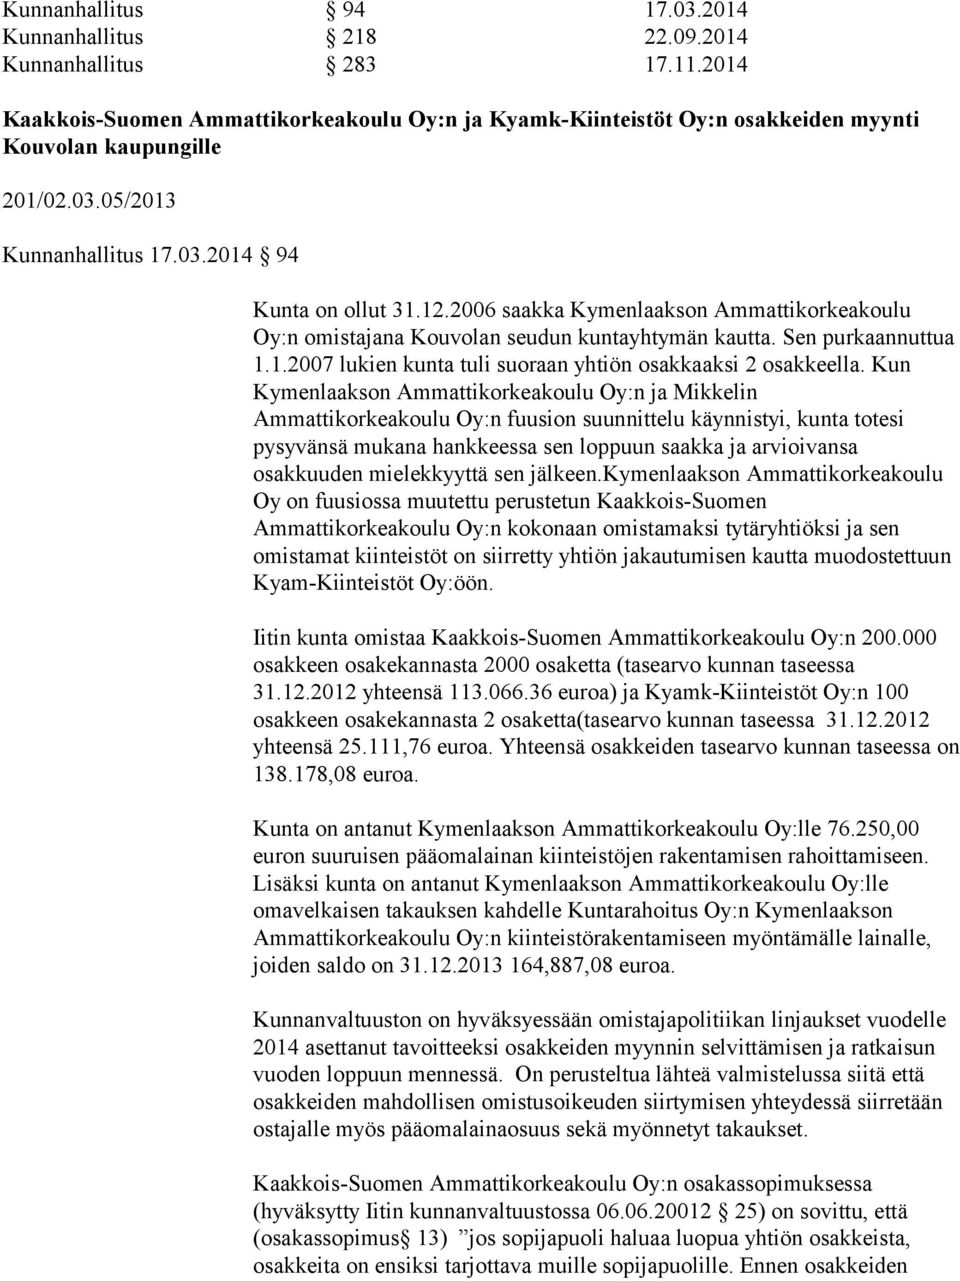 2006 saakka Kymenlaakson Ammattikorkeakoulu Oy:n omistajana Kouvolan seudun kuntayhtymän kautta. Sen purkaannuttua 1.1.2007 lukien kunta tuli suoraan yhtiön osakkaaksi 2 osakkeella.